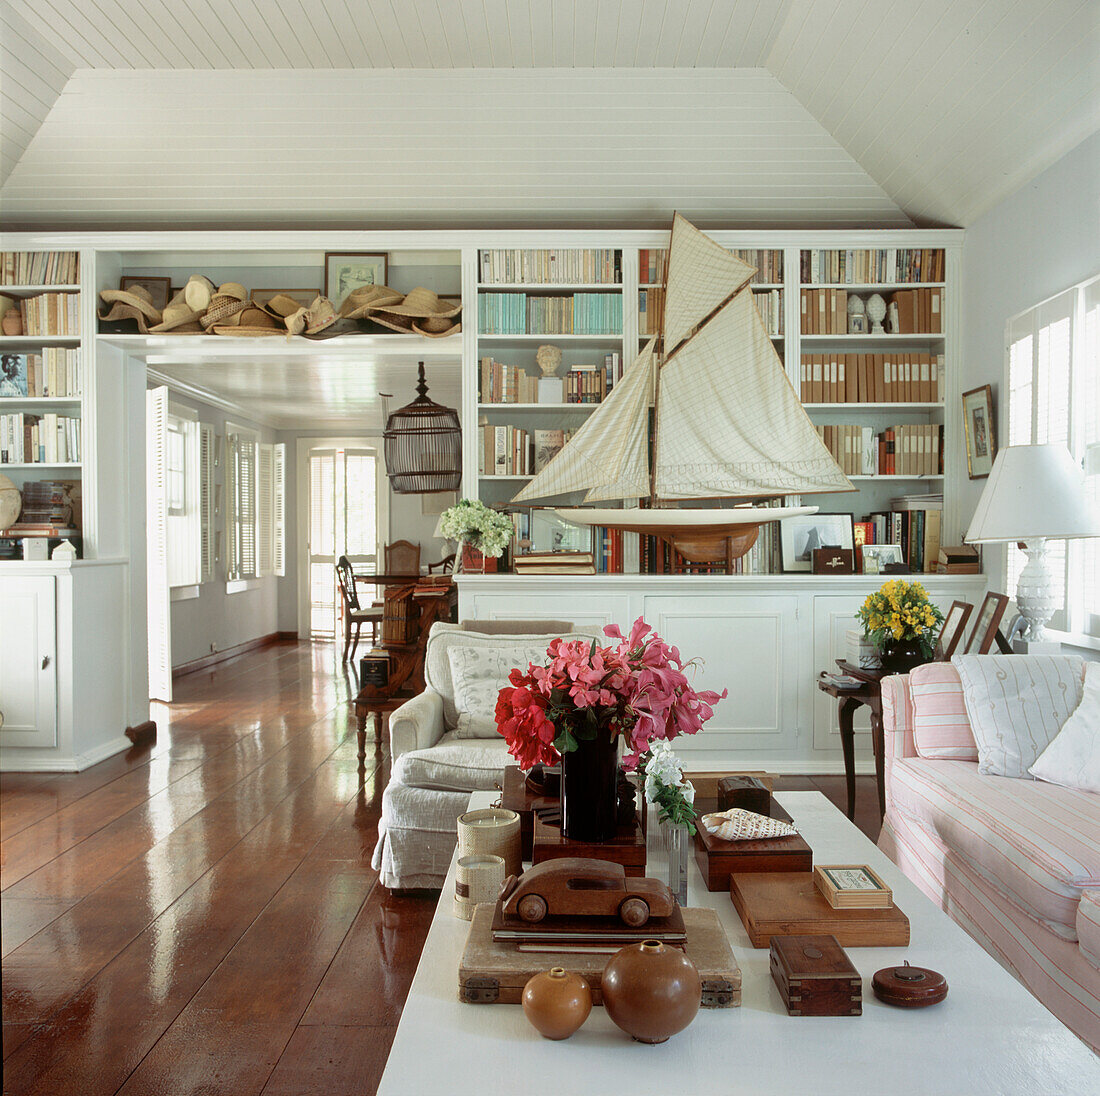 Offenes Wohn-Esszimmer mit eingebauten Bücherregalen und Schränken, in denen unter anderem Strohhüte und ein Modellsegelboot ausgestellt sind